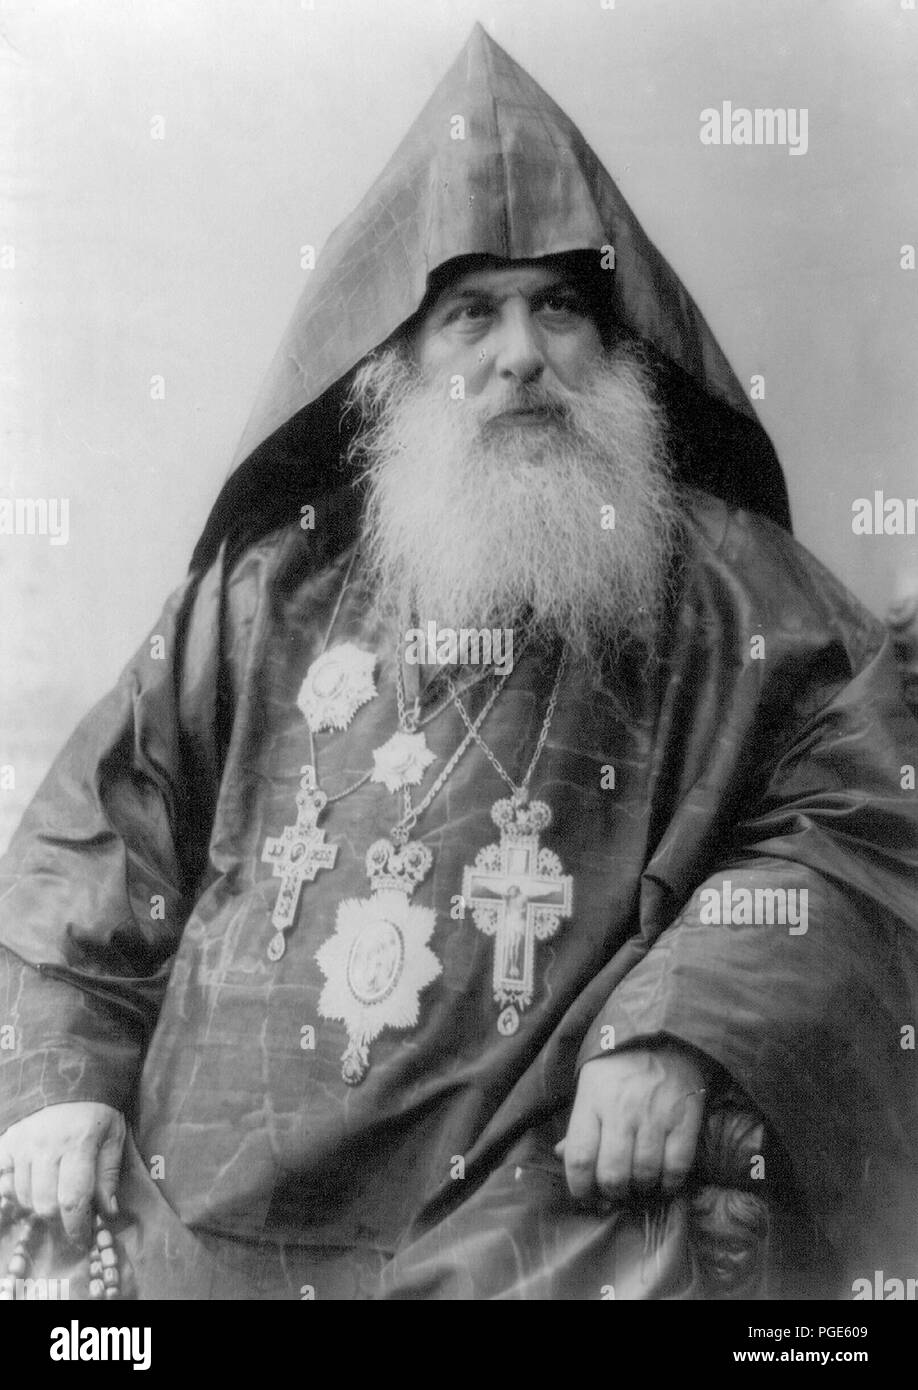 Harootiun Vehabedian patriarche de l'Eglise Arménienne le Port Hood, robe et cinq médailles, half-length portrait, faisant face à droite Banque D'Images